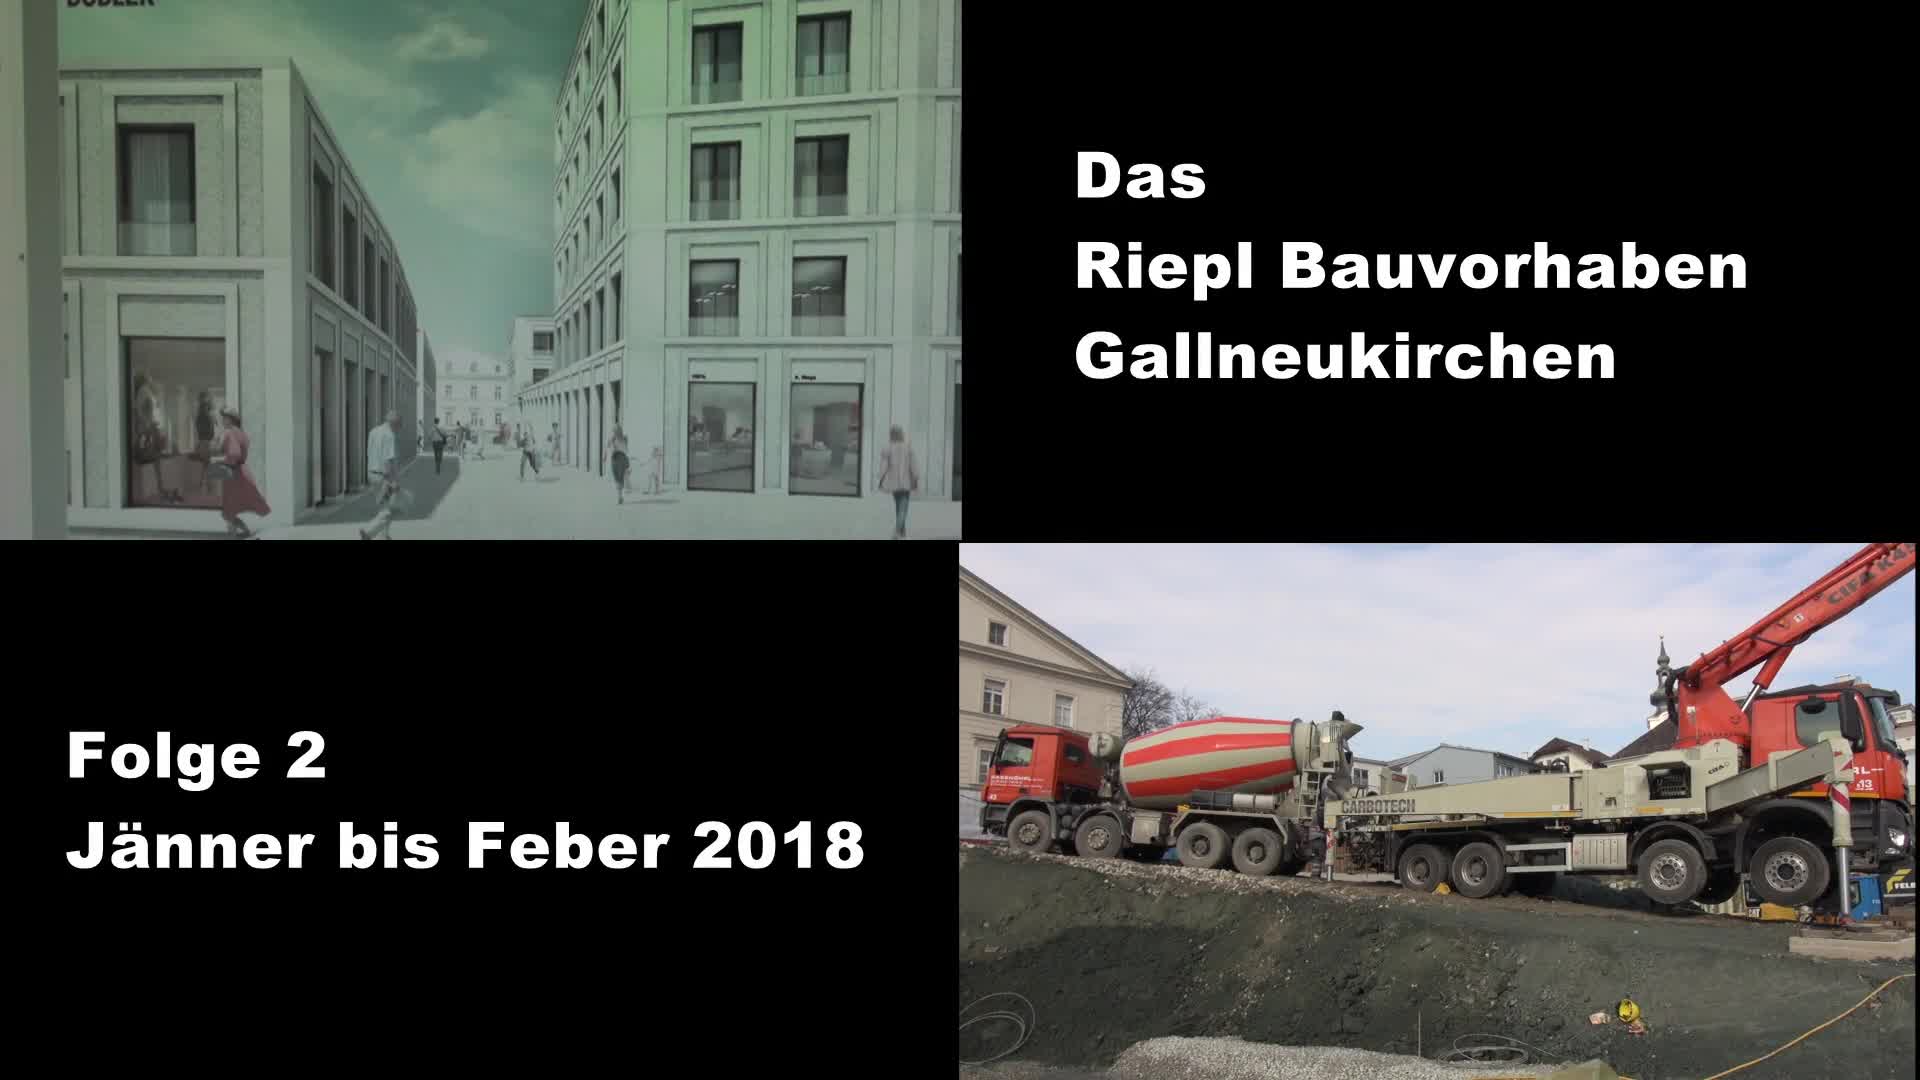 Riepl Bauvorhaben Folge 2 Jänner u. Feber 2018